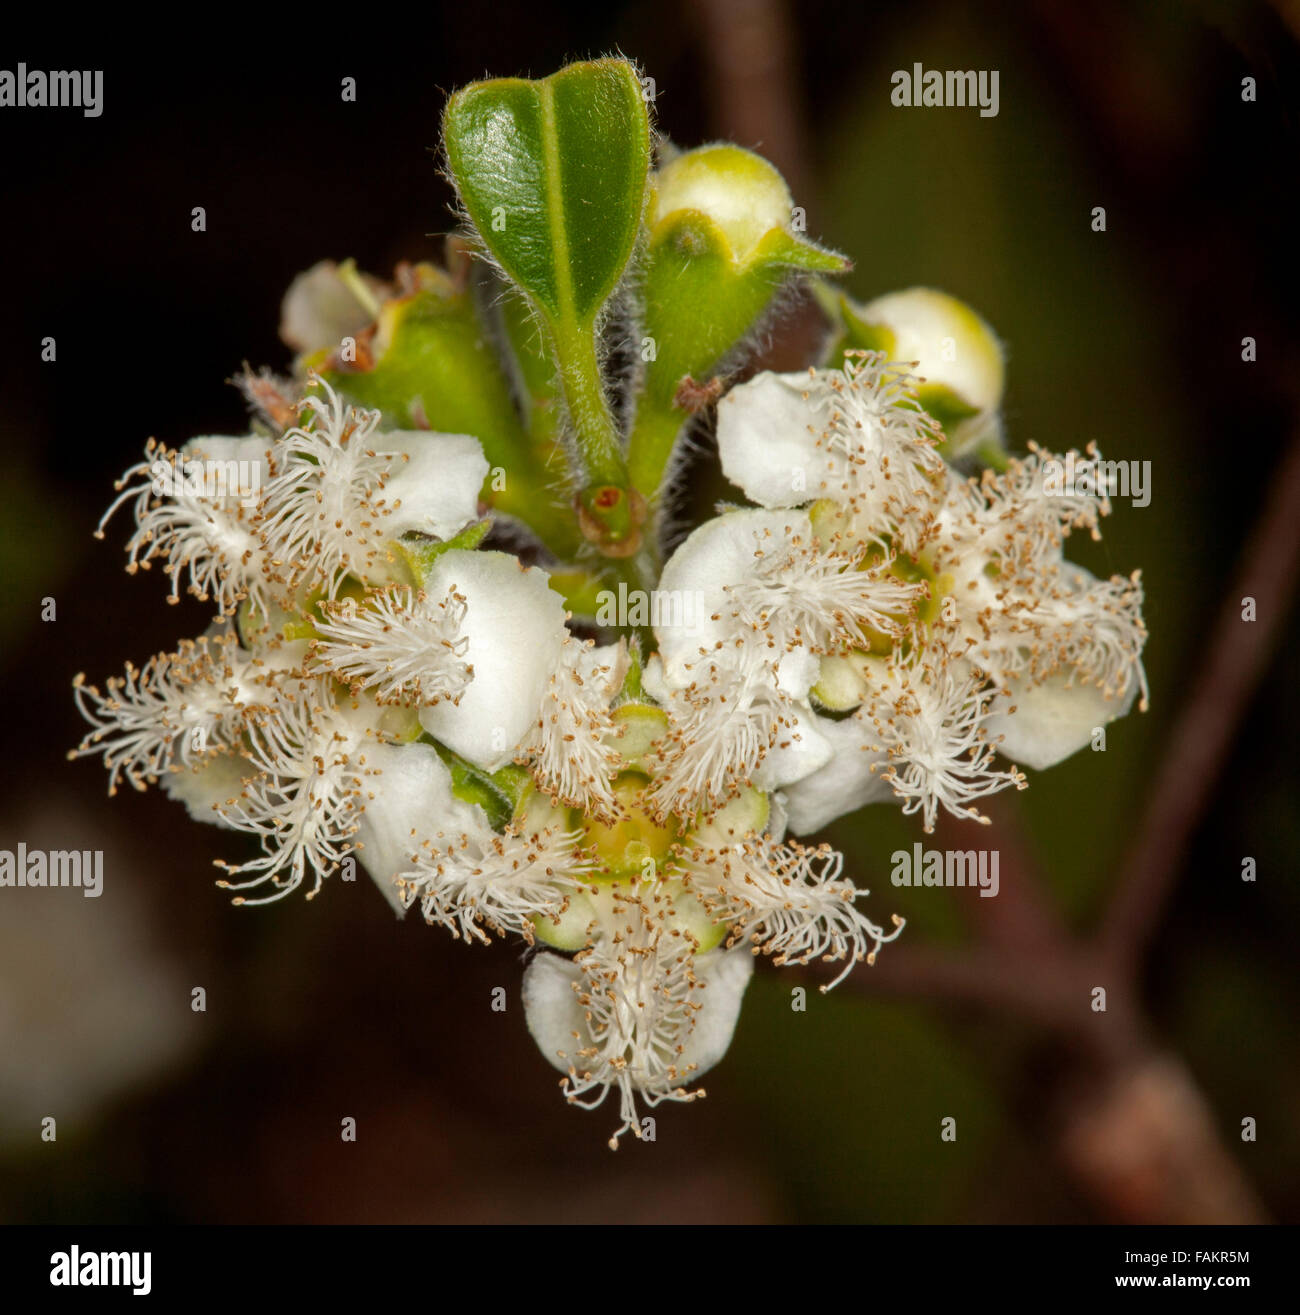 Cluster von weißen Blüten der australischen einheimischen Baumes Lophostemon Confertus Syn Tristania Conferta, Queensland Pinsel Buchsbaum auf dunklem Hintergrund Stockfoto